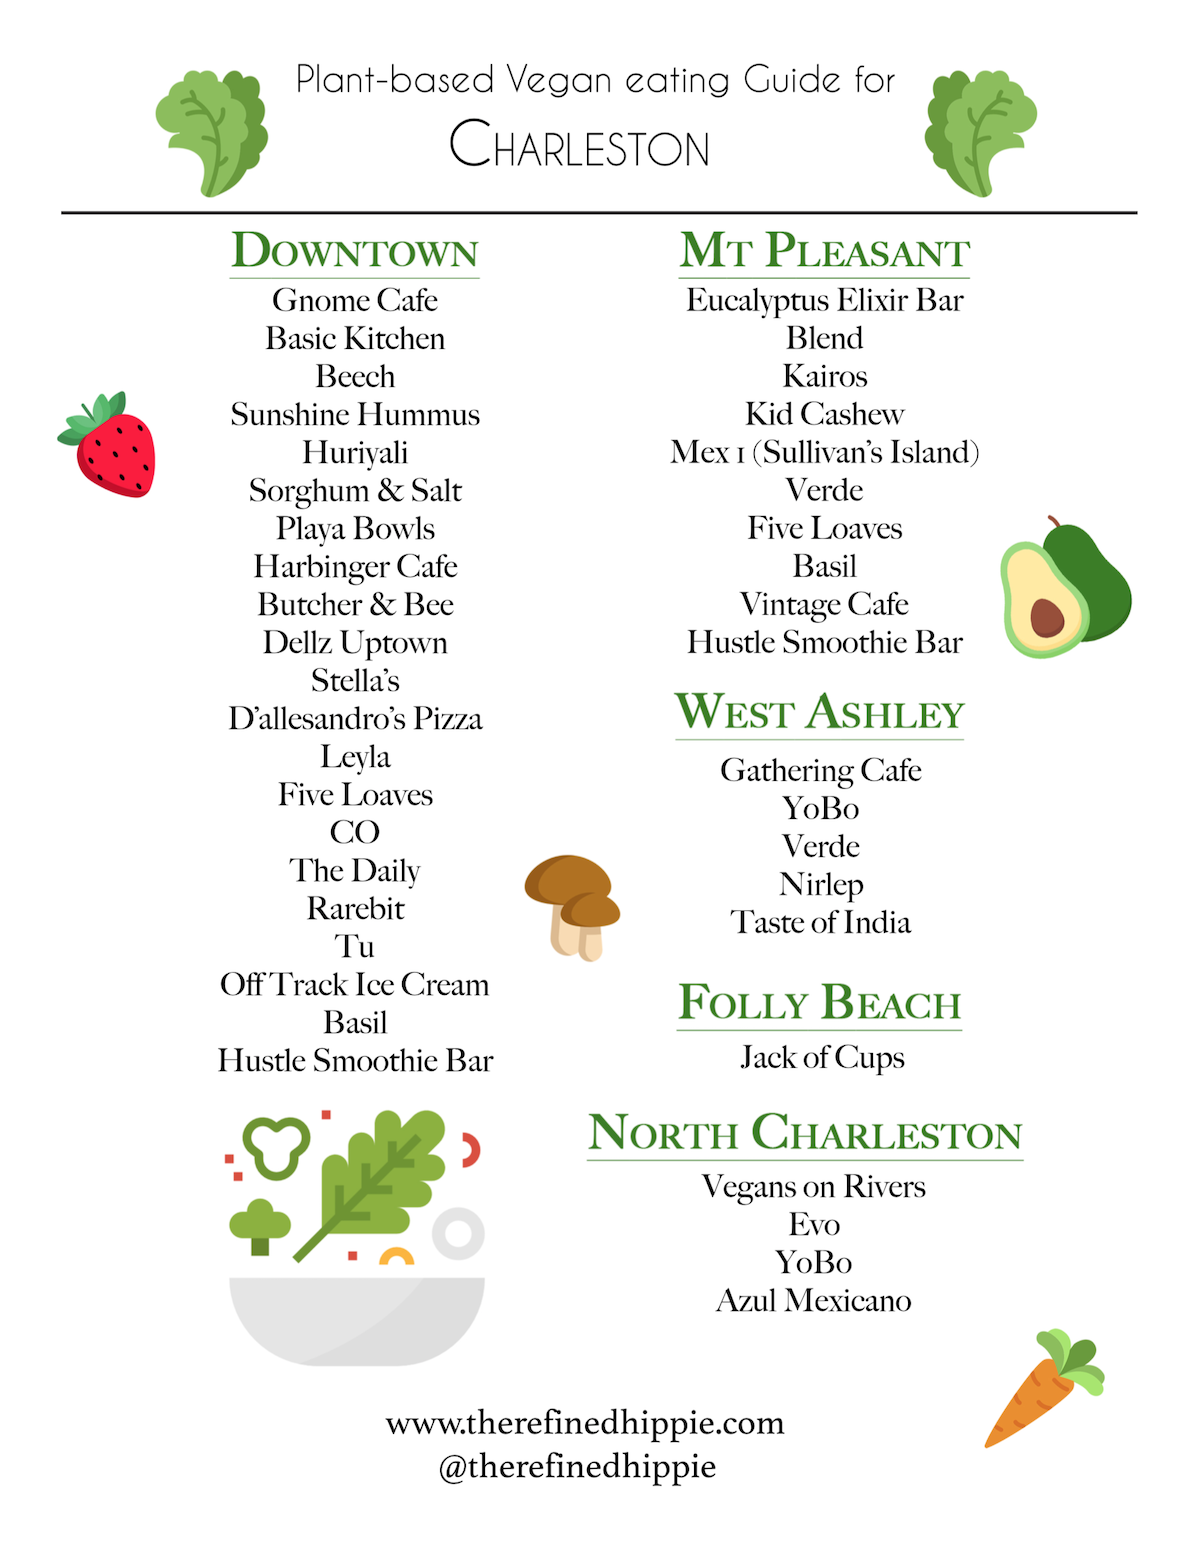 Plant based vegan eating guide for Charleston 2020